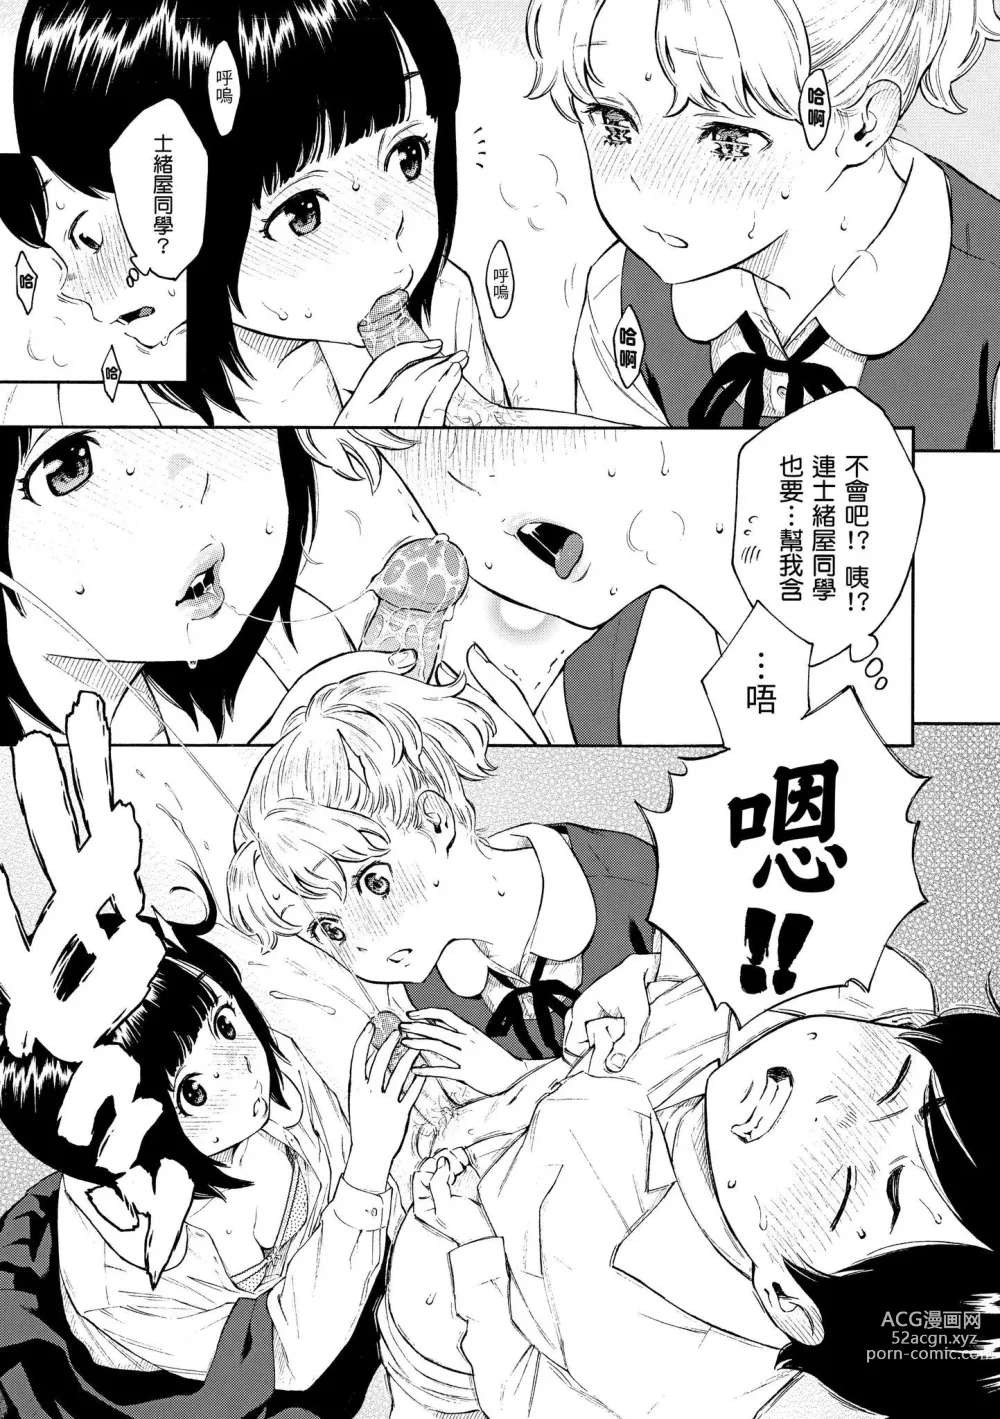 Page 214 of manga 放學後的香草女孩 (decensored)